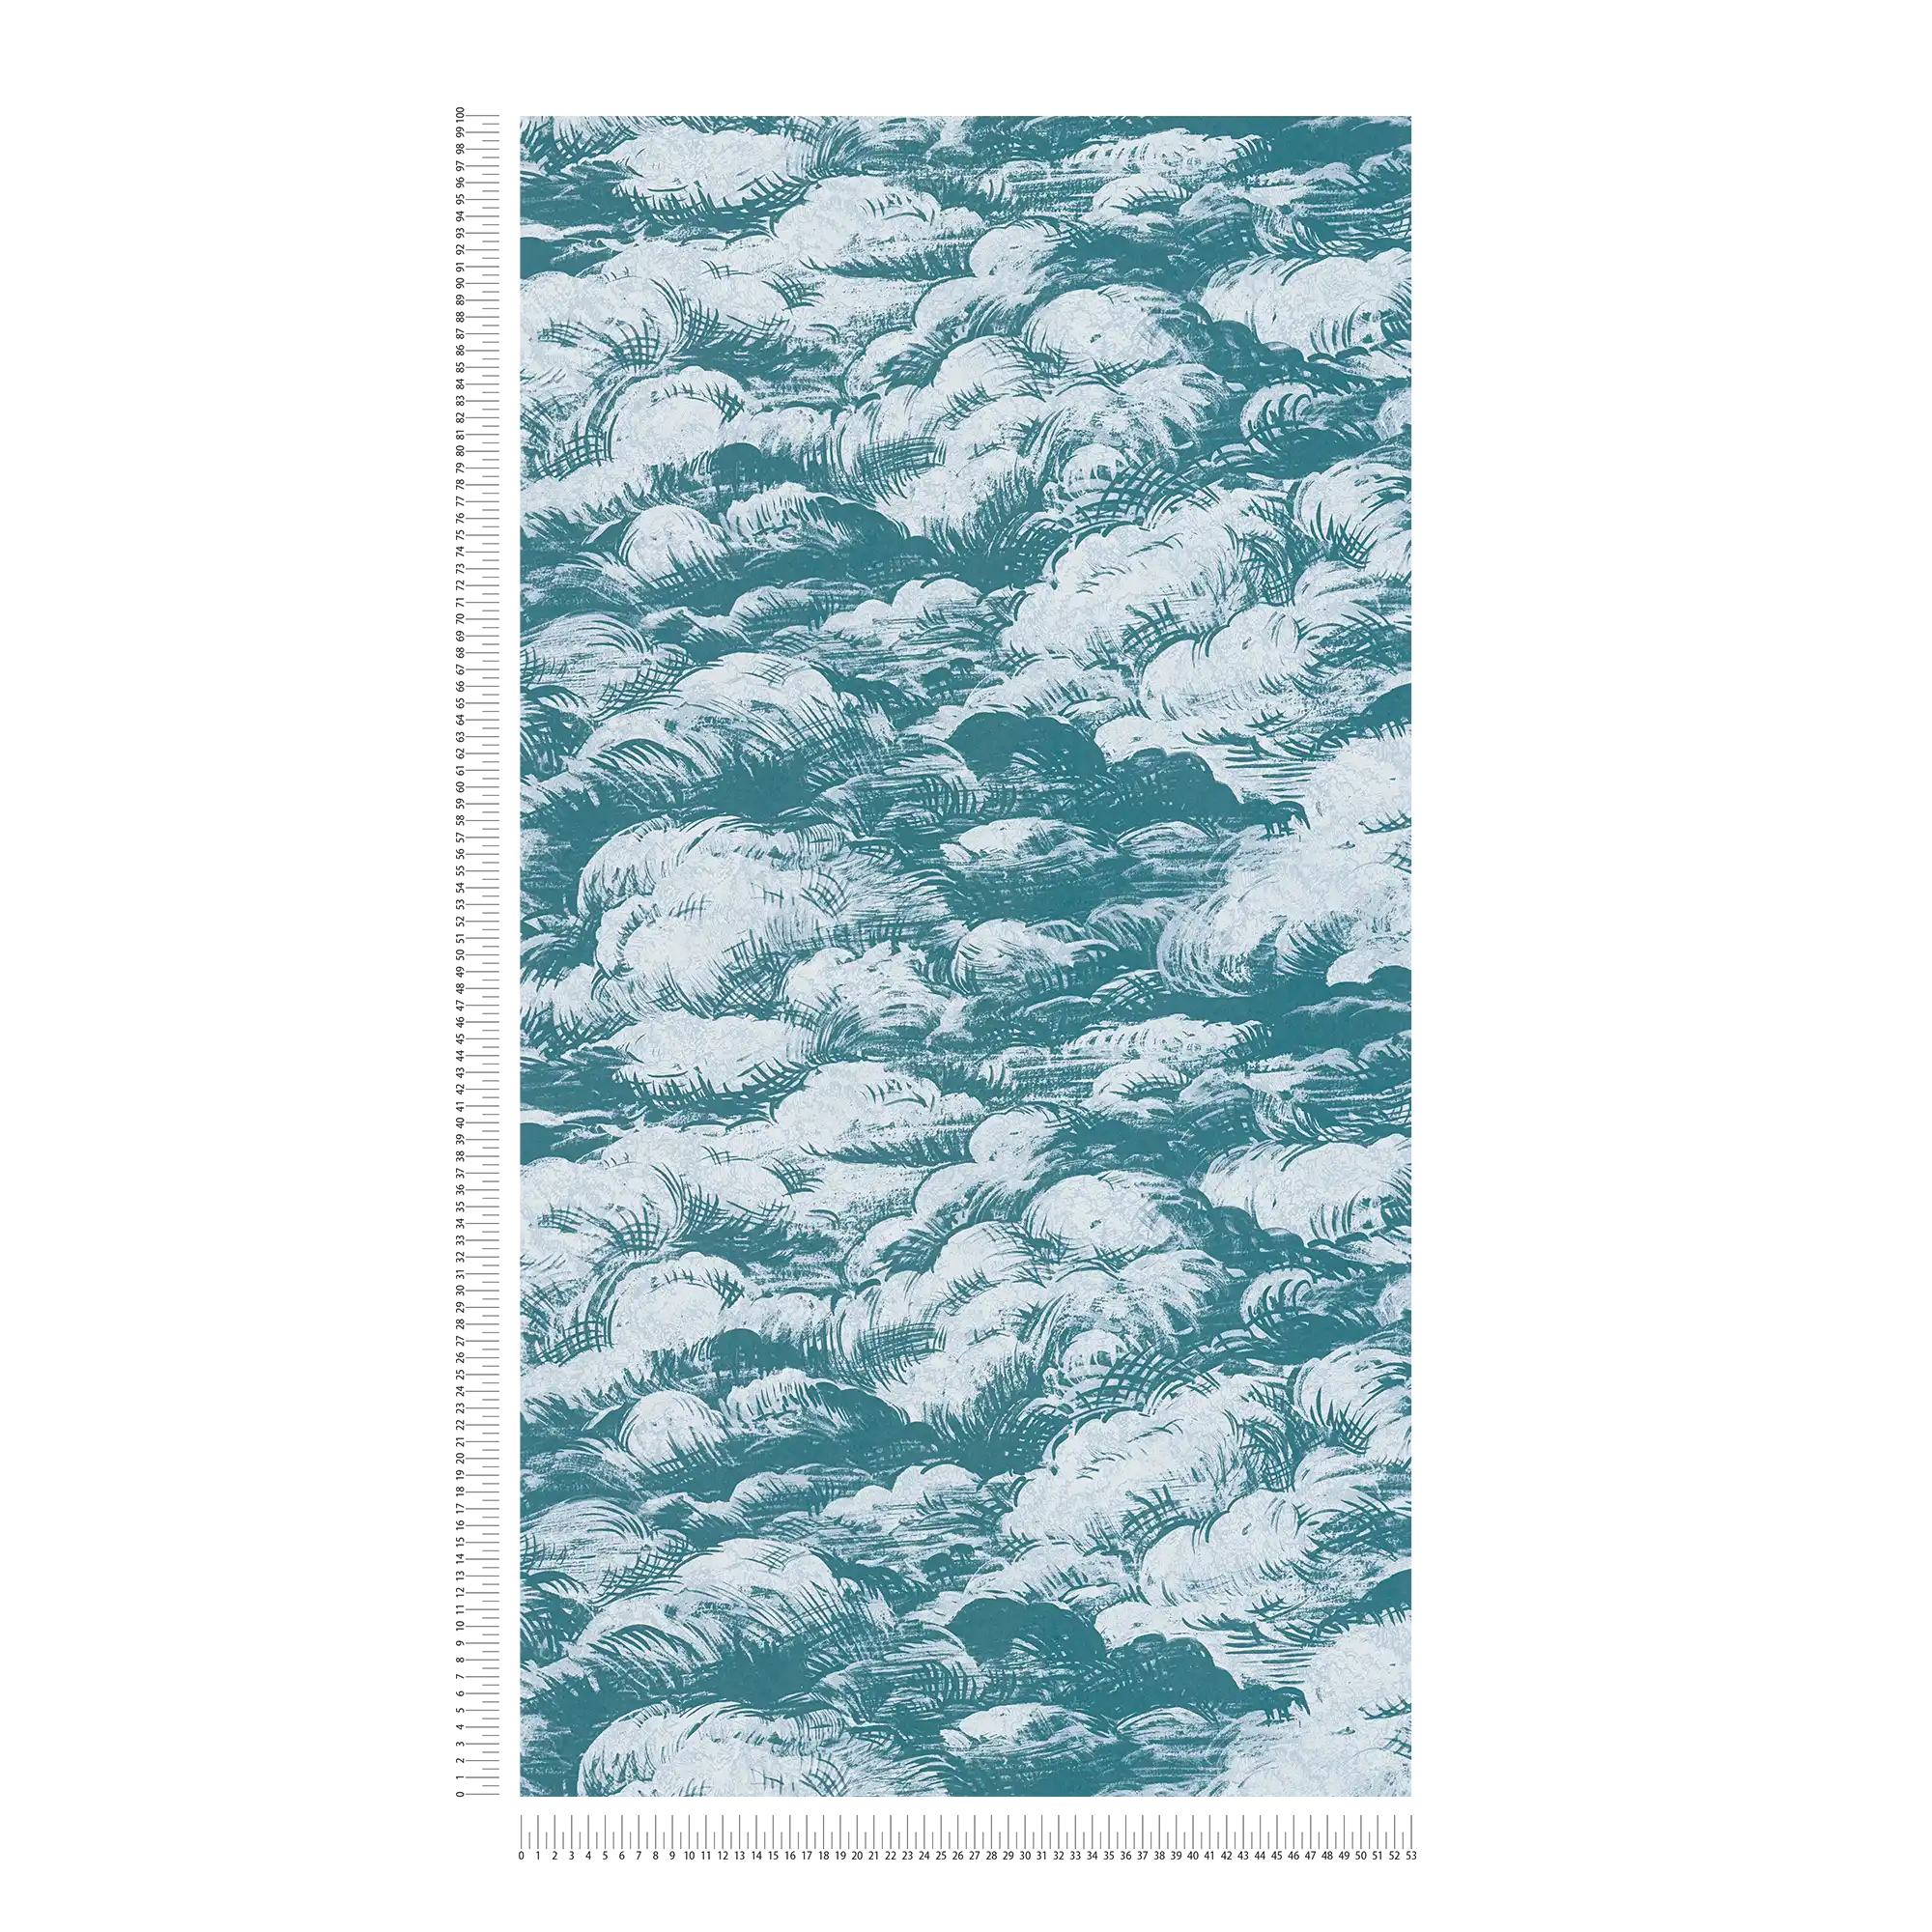             Papier peint bleu-vert nuages paysage style vintage - bleu, blanc
        